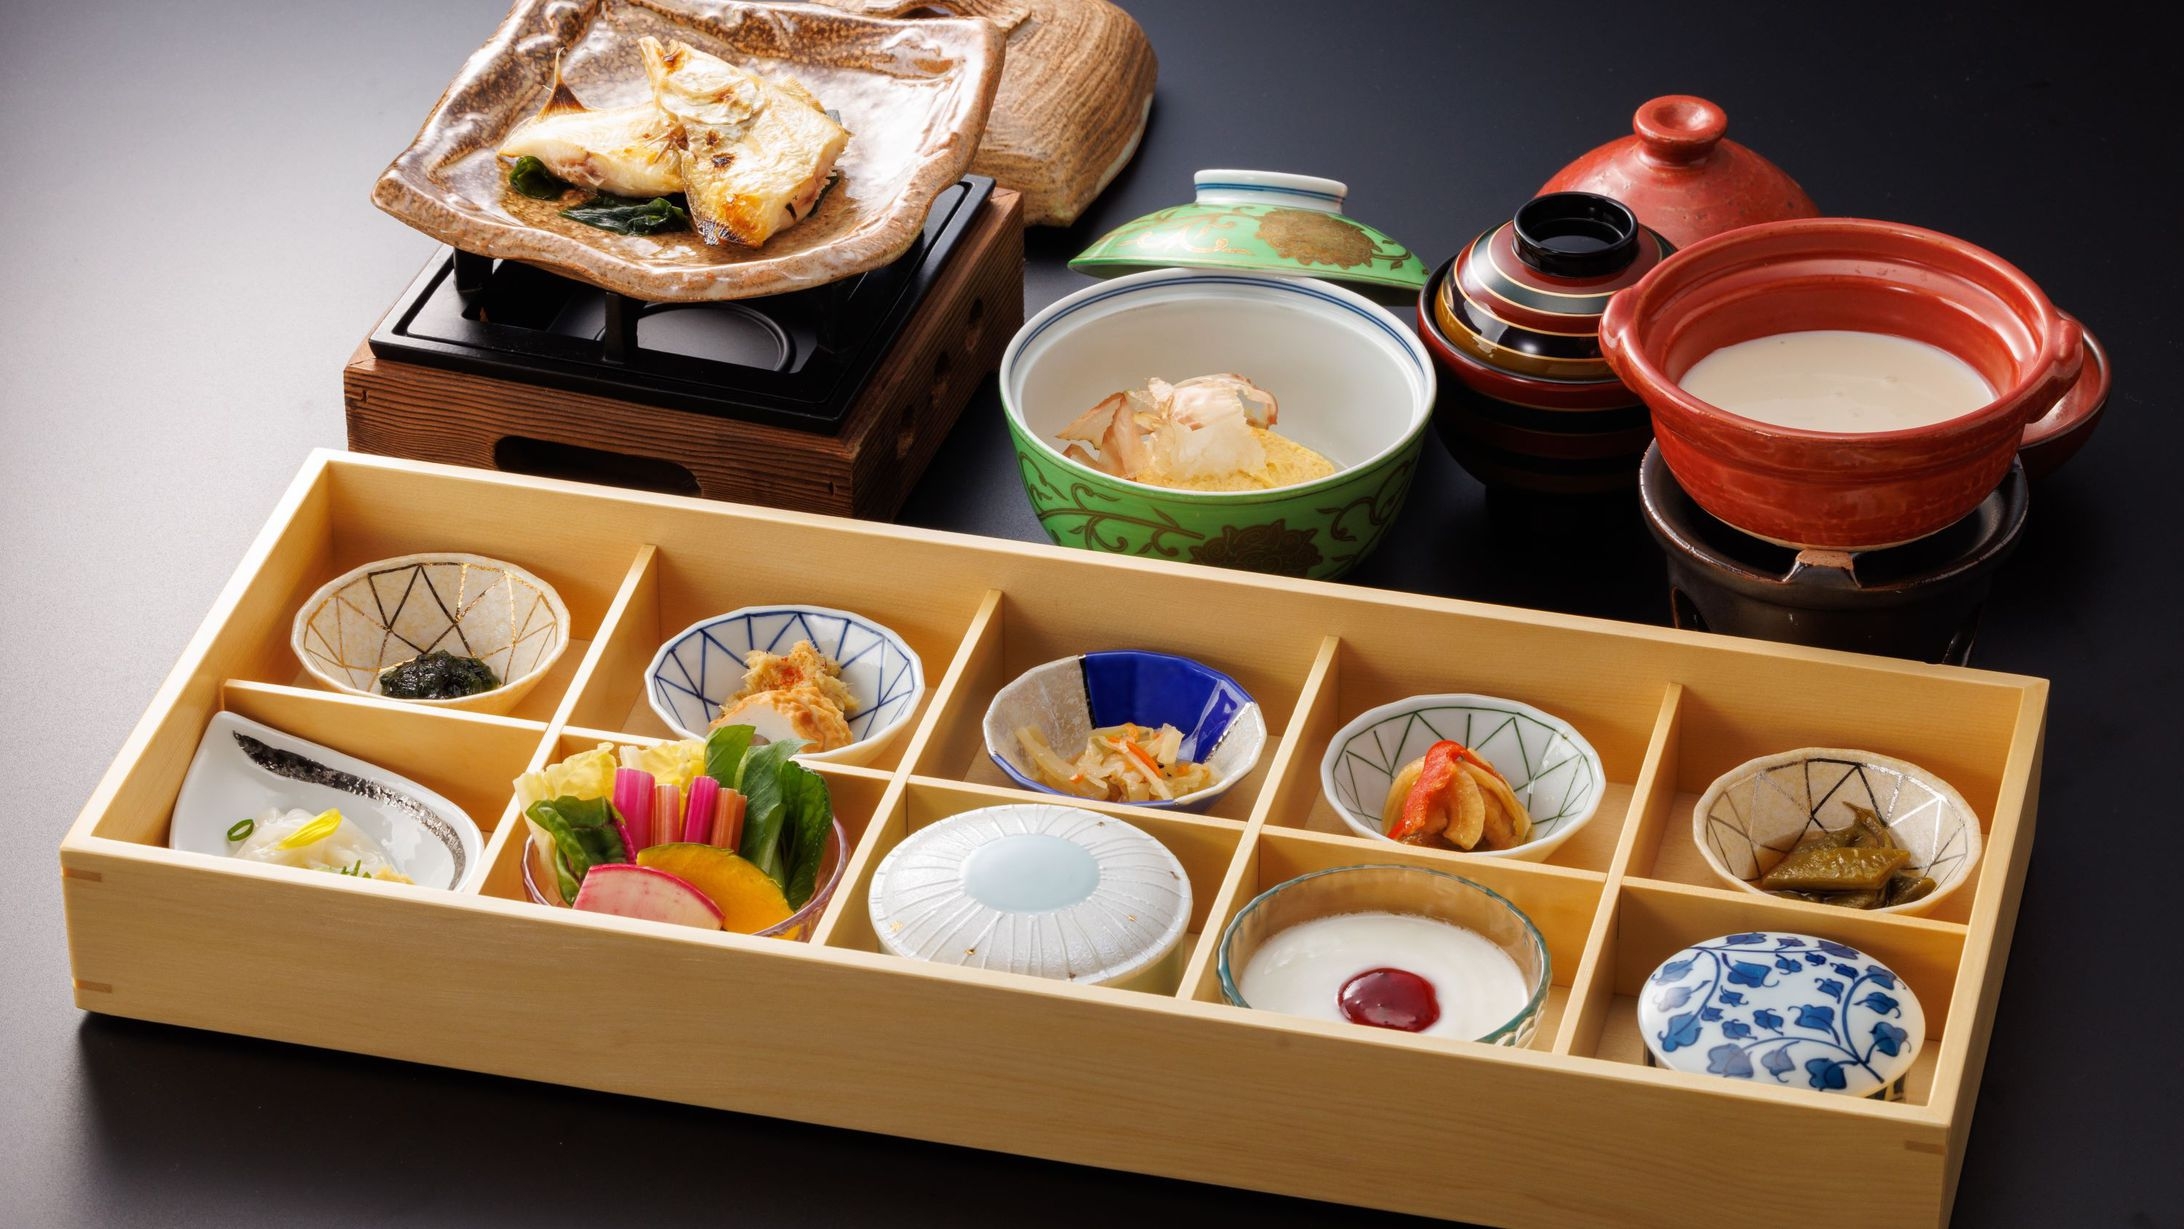 ≪個室食≫旬の地元食材を使った日本料理を堪能＊温泉と季節の和風会席料理（基本コース）プラン